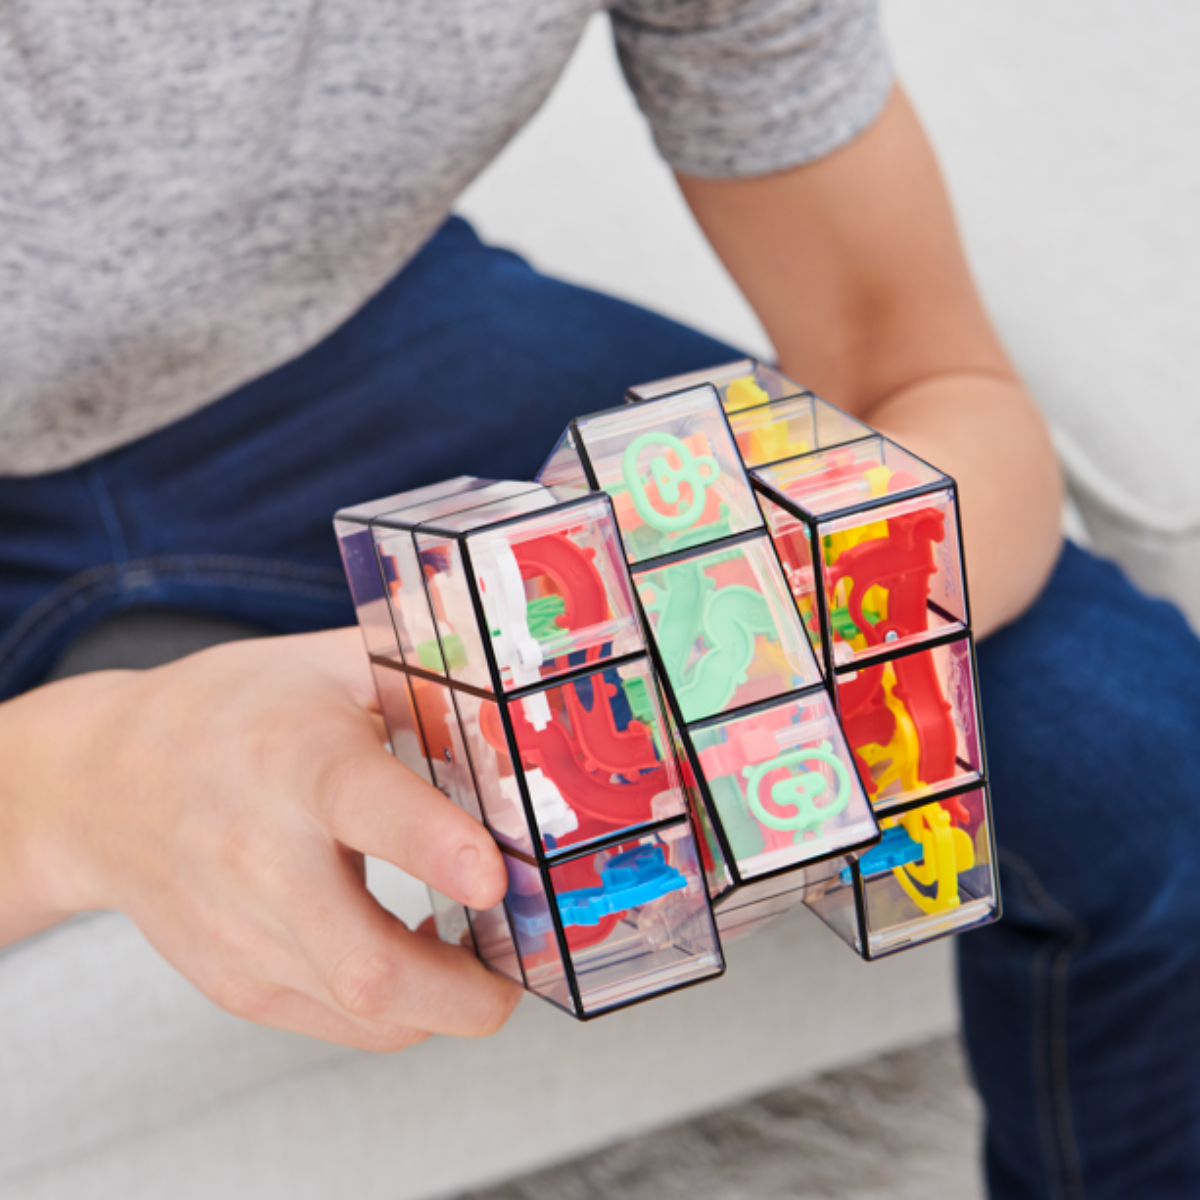 Rubiks Perplexus 3x3